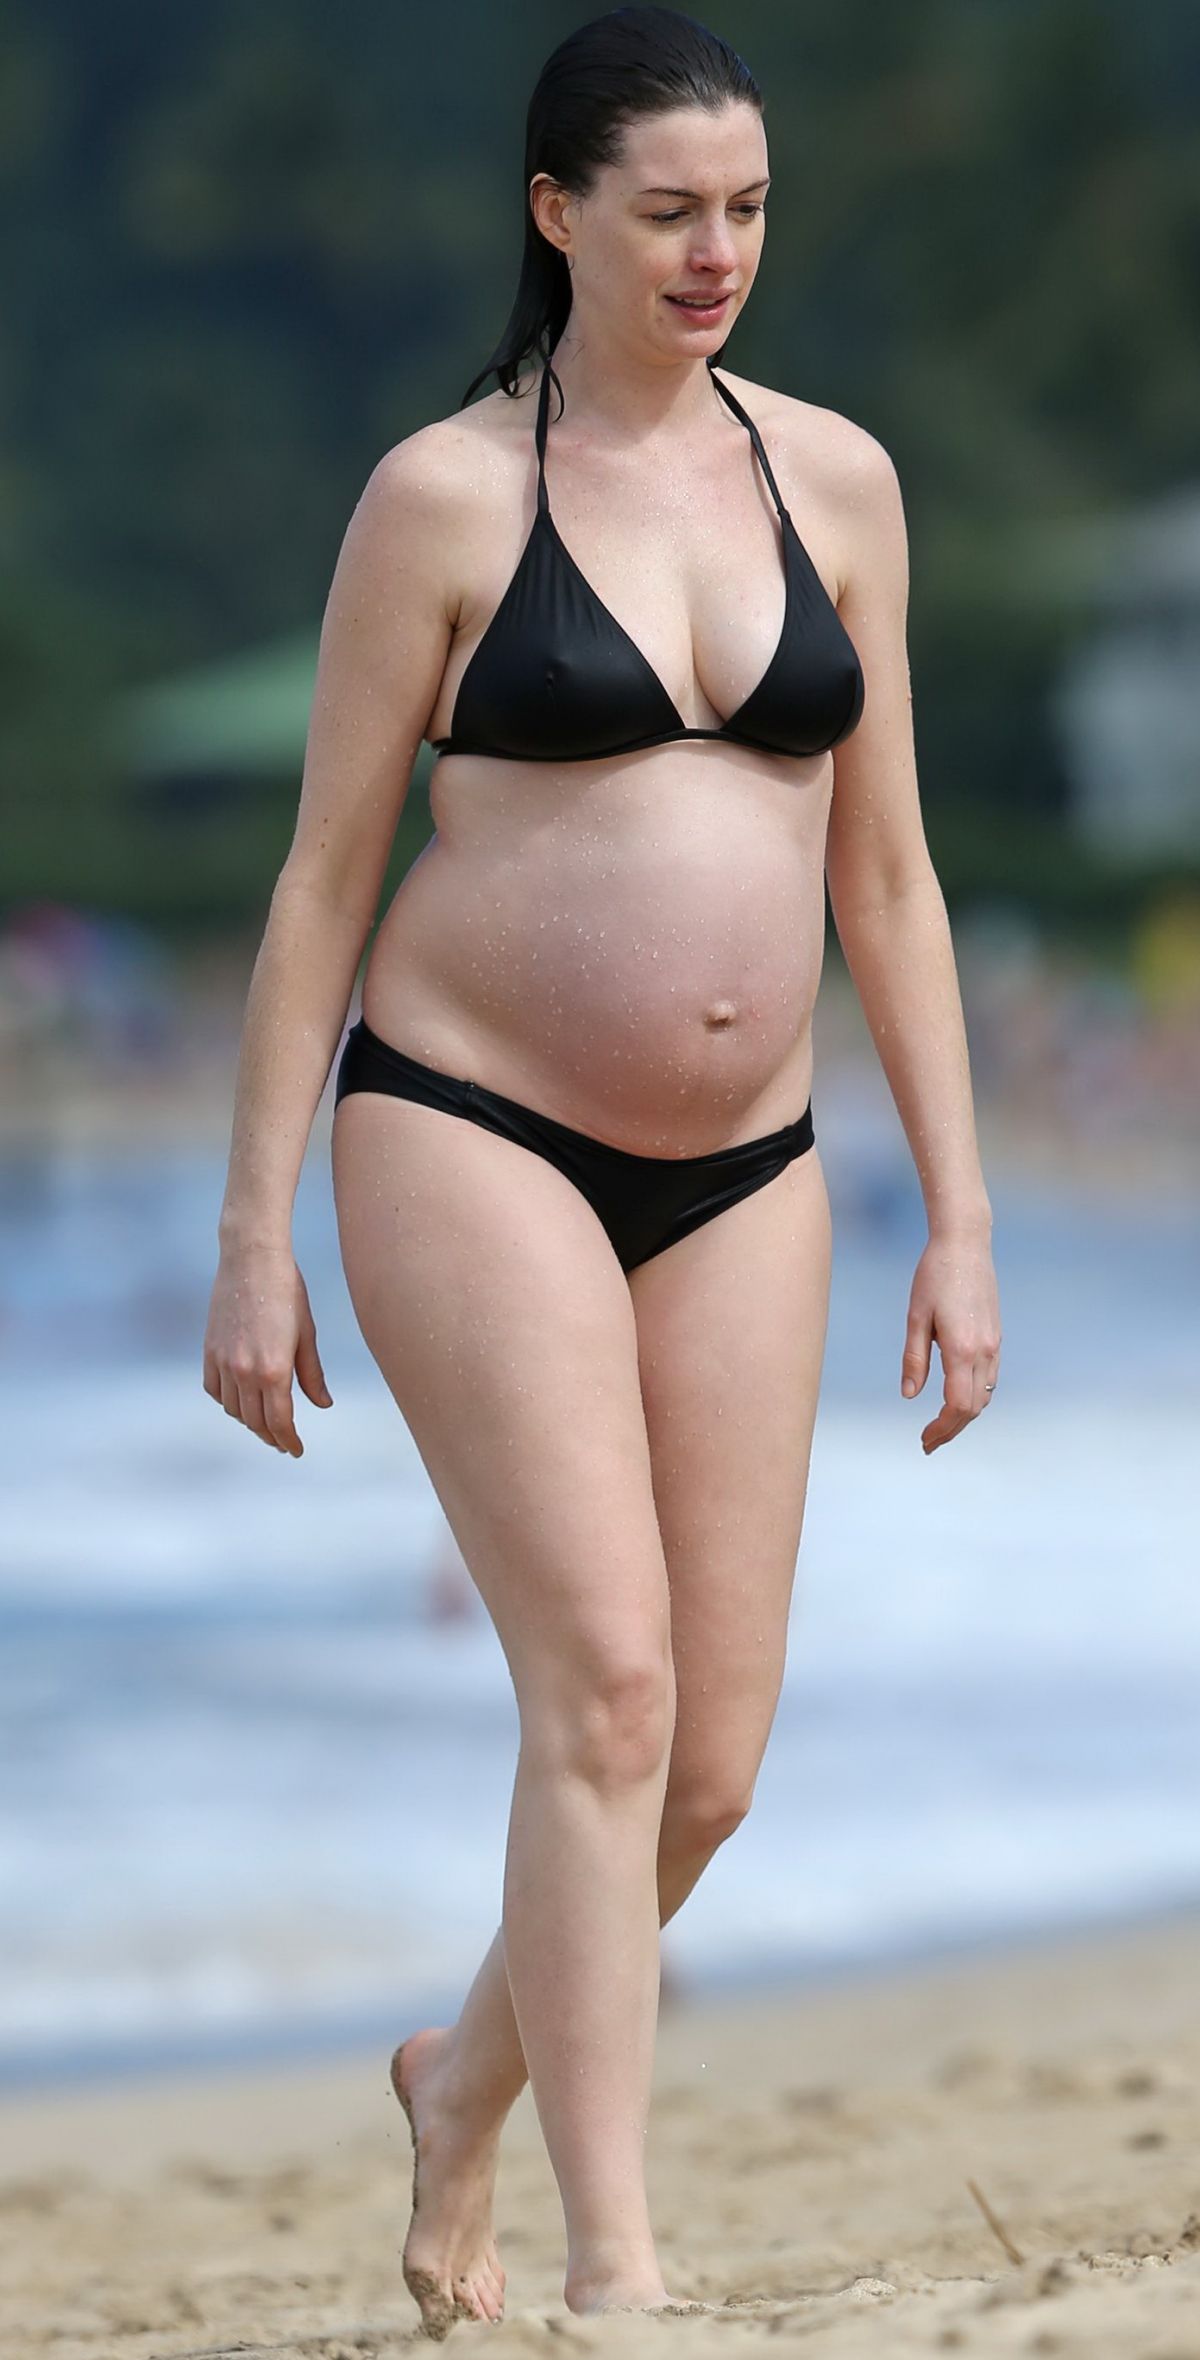 Pregnant Bikini Pictures 22